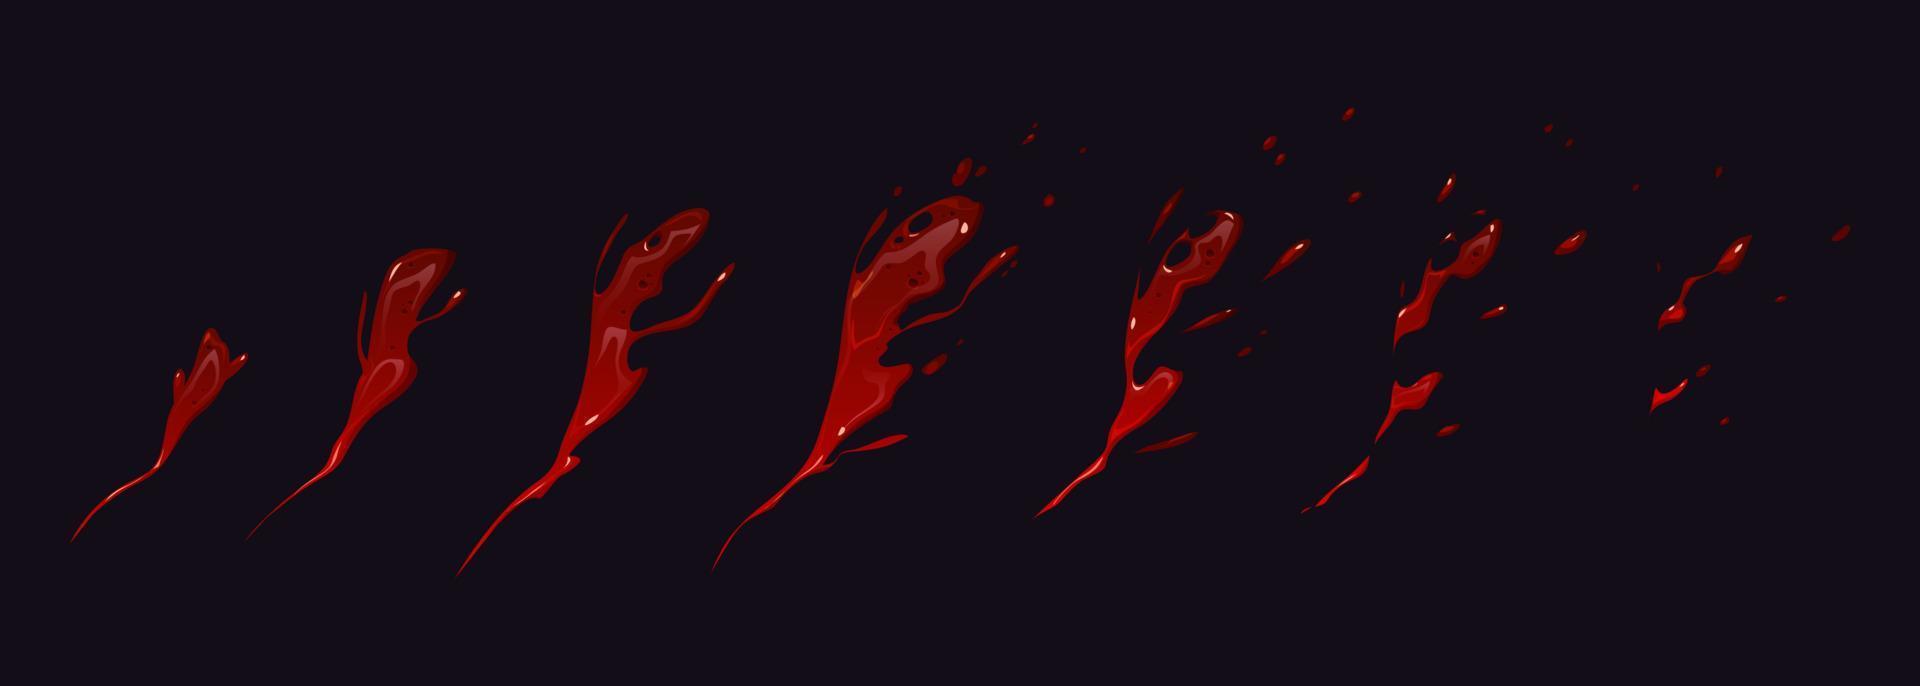 sangue spruzzo animazione folletto foglio dinamico movimento vettore